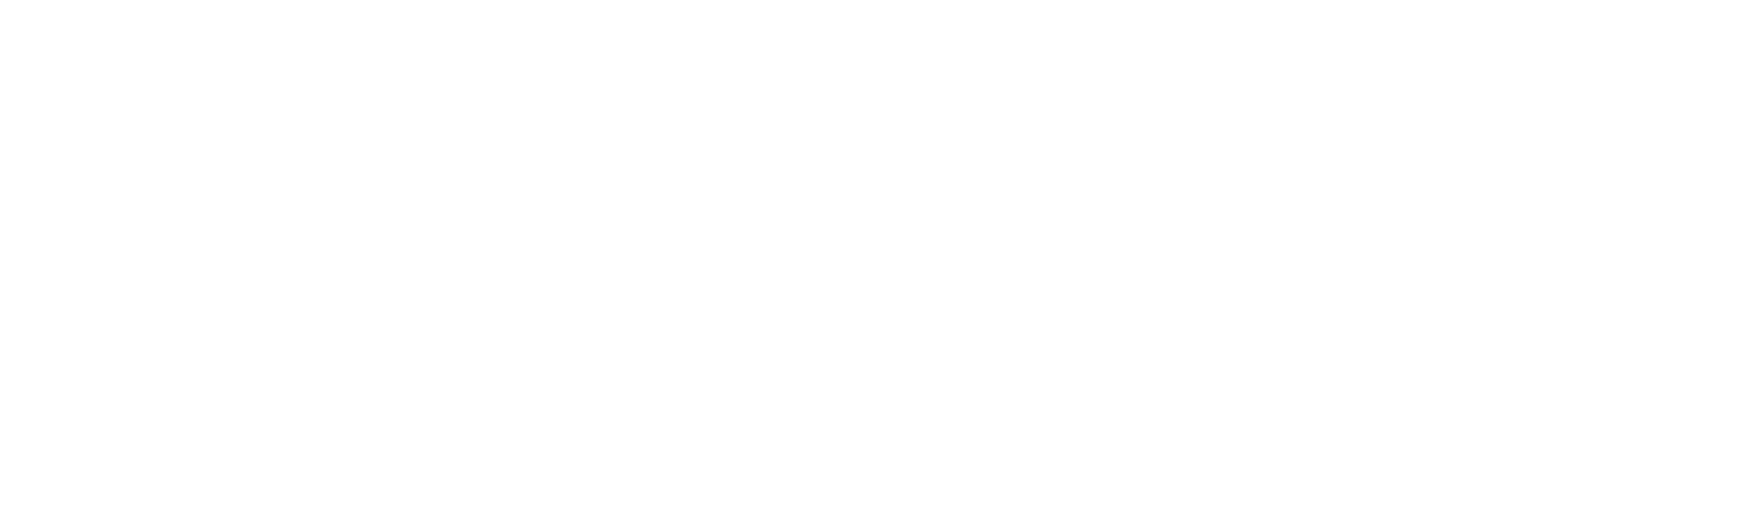 David Sanchez law group White logo